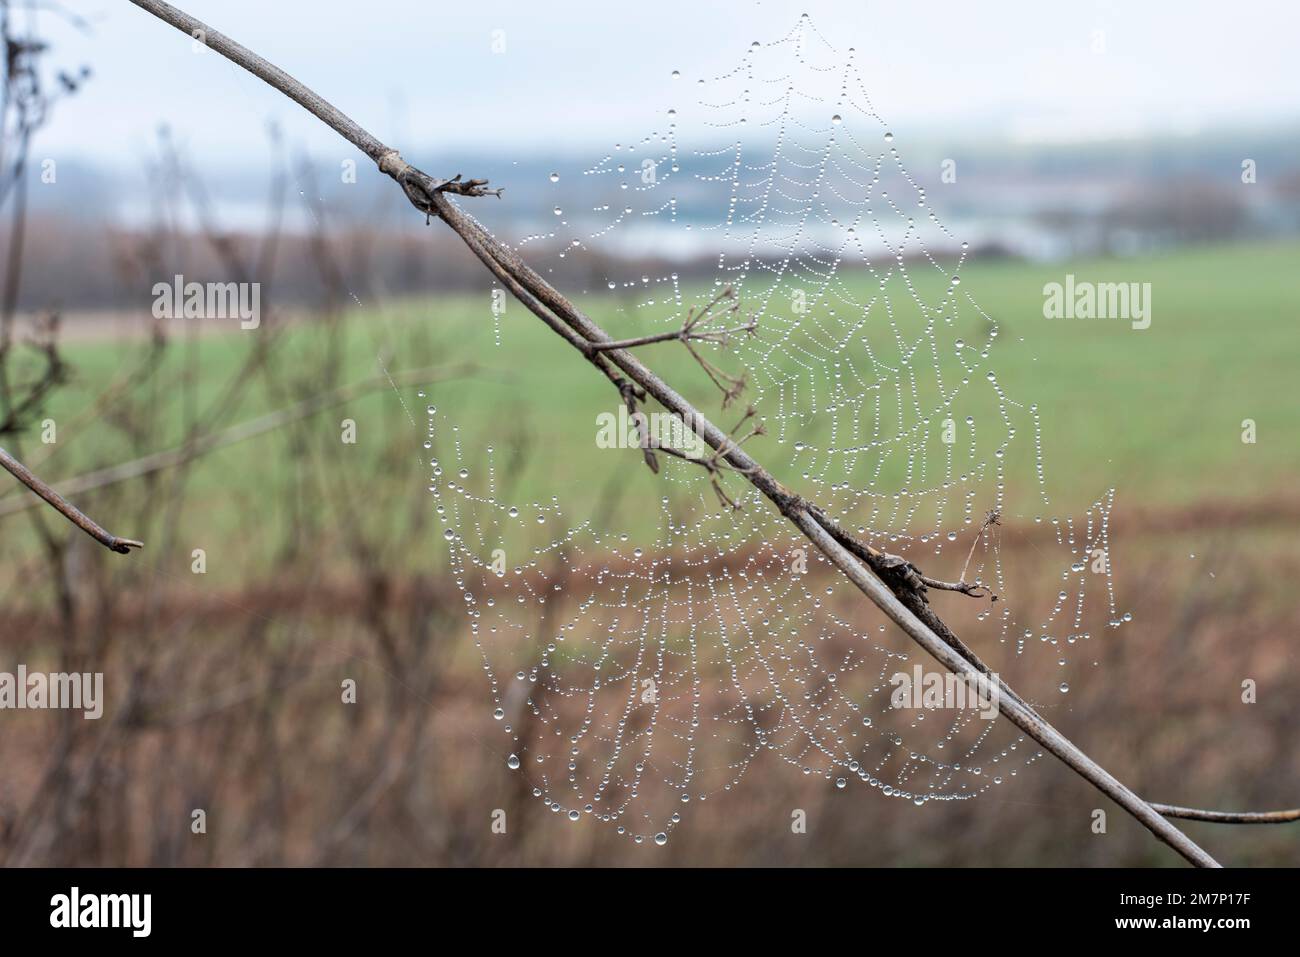 Gotas de agua de rocío atrapadas en una tela de araña en una mañana fría de invierno Stock Photo